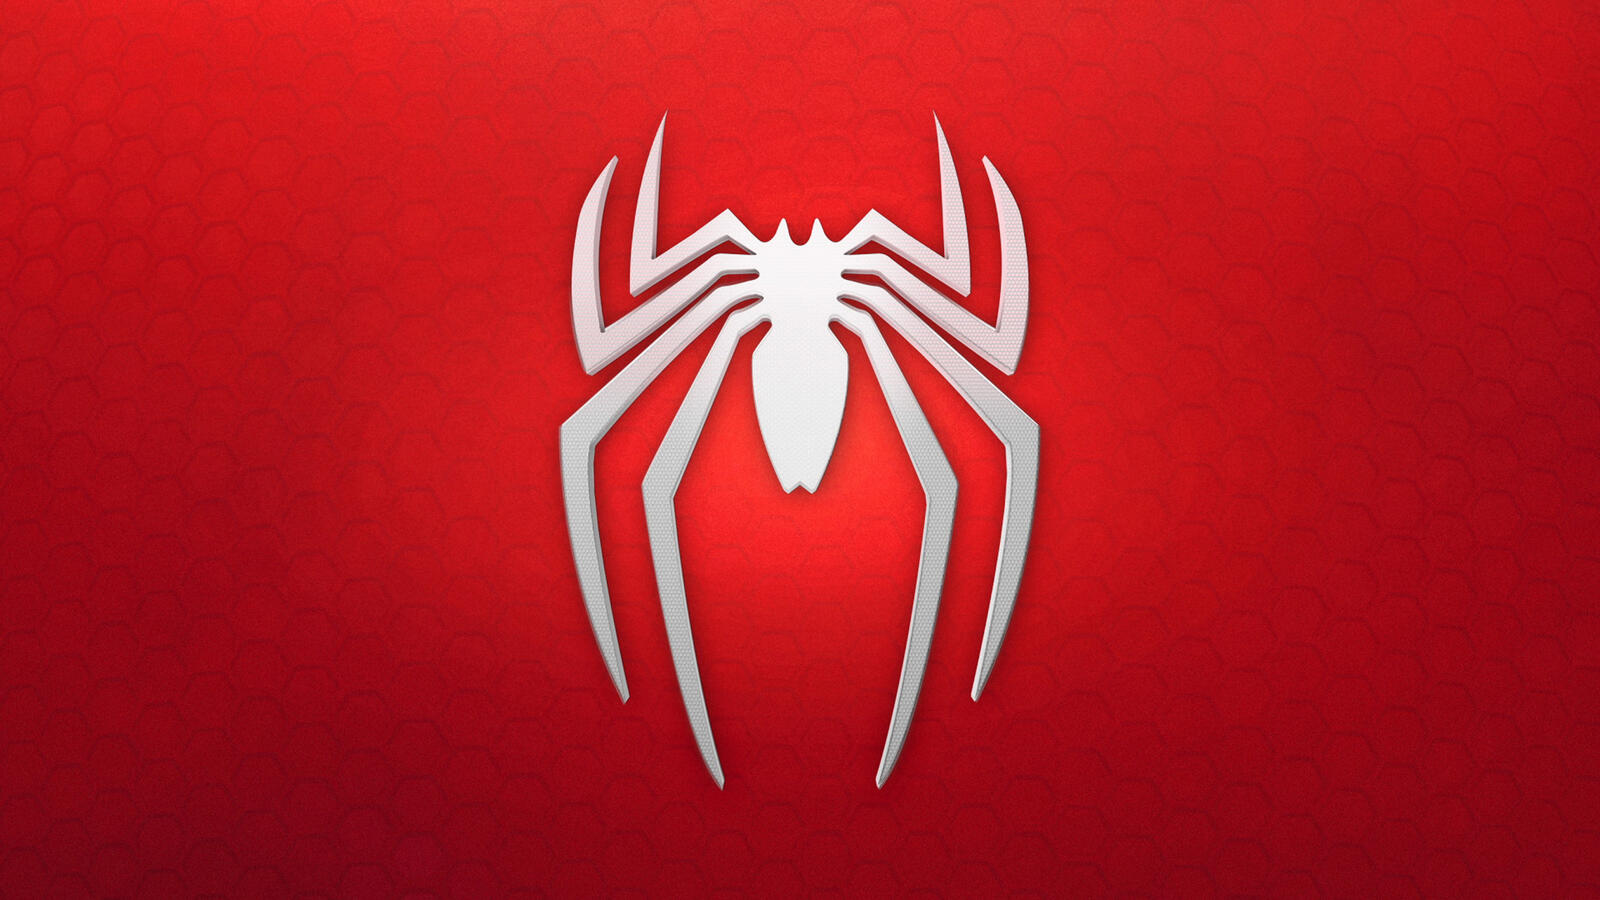 Free photo Spider-Man logo desktop picture